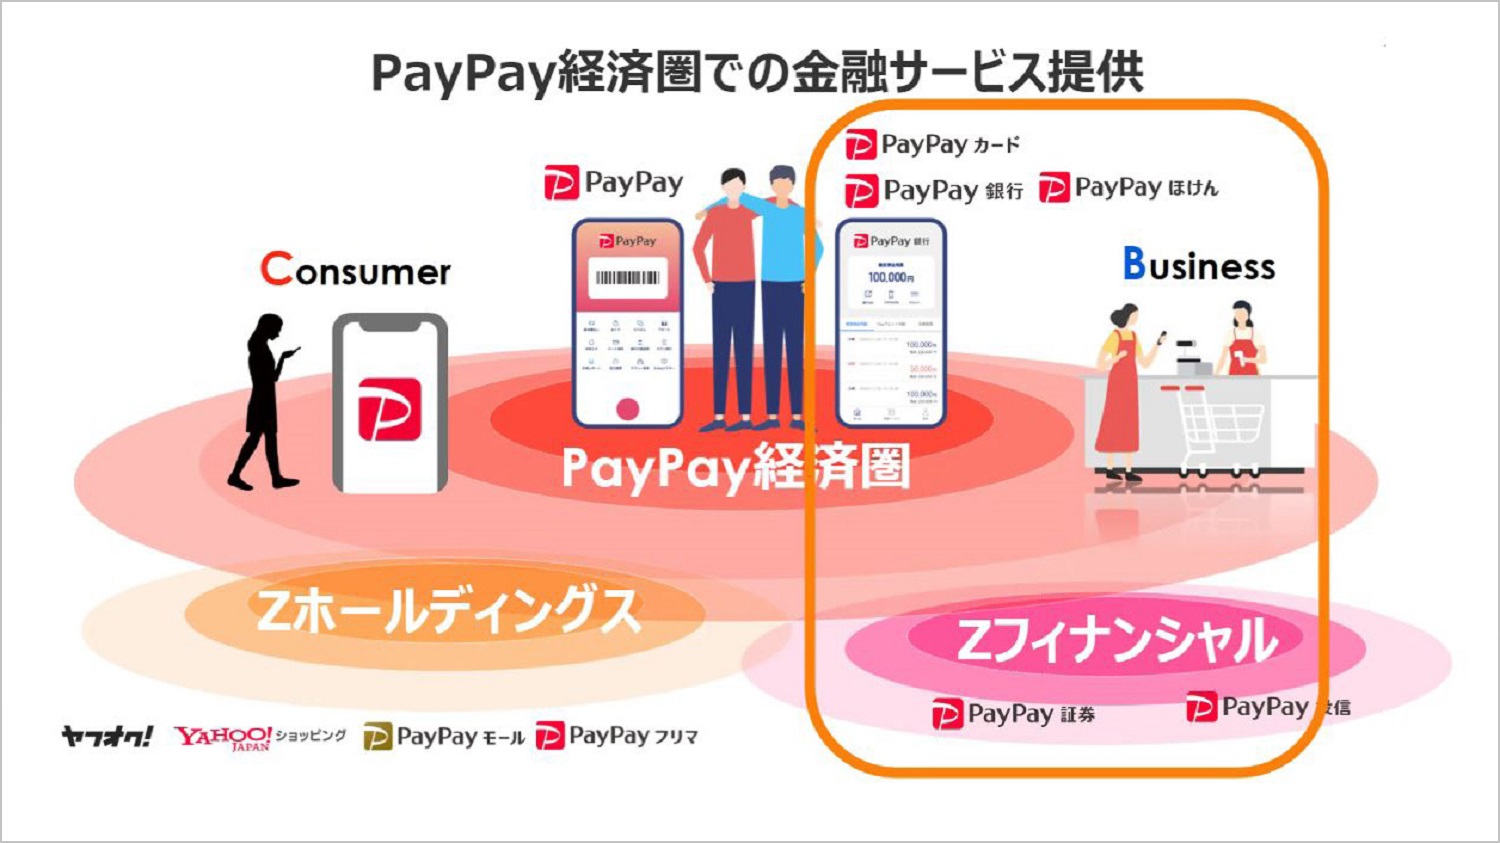 柏木の記事中画像１枚目：PayPay経済圏での金融サービス提供について説明している資料画像